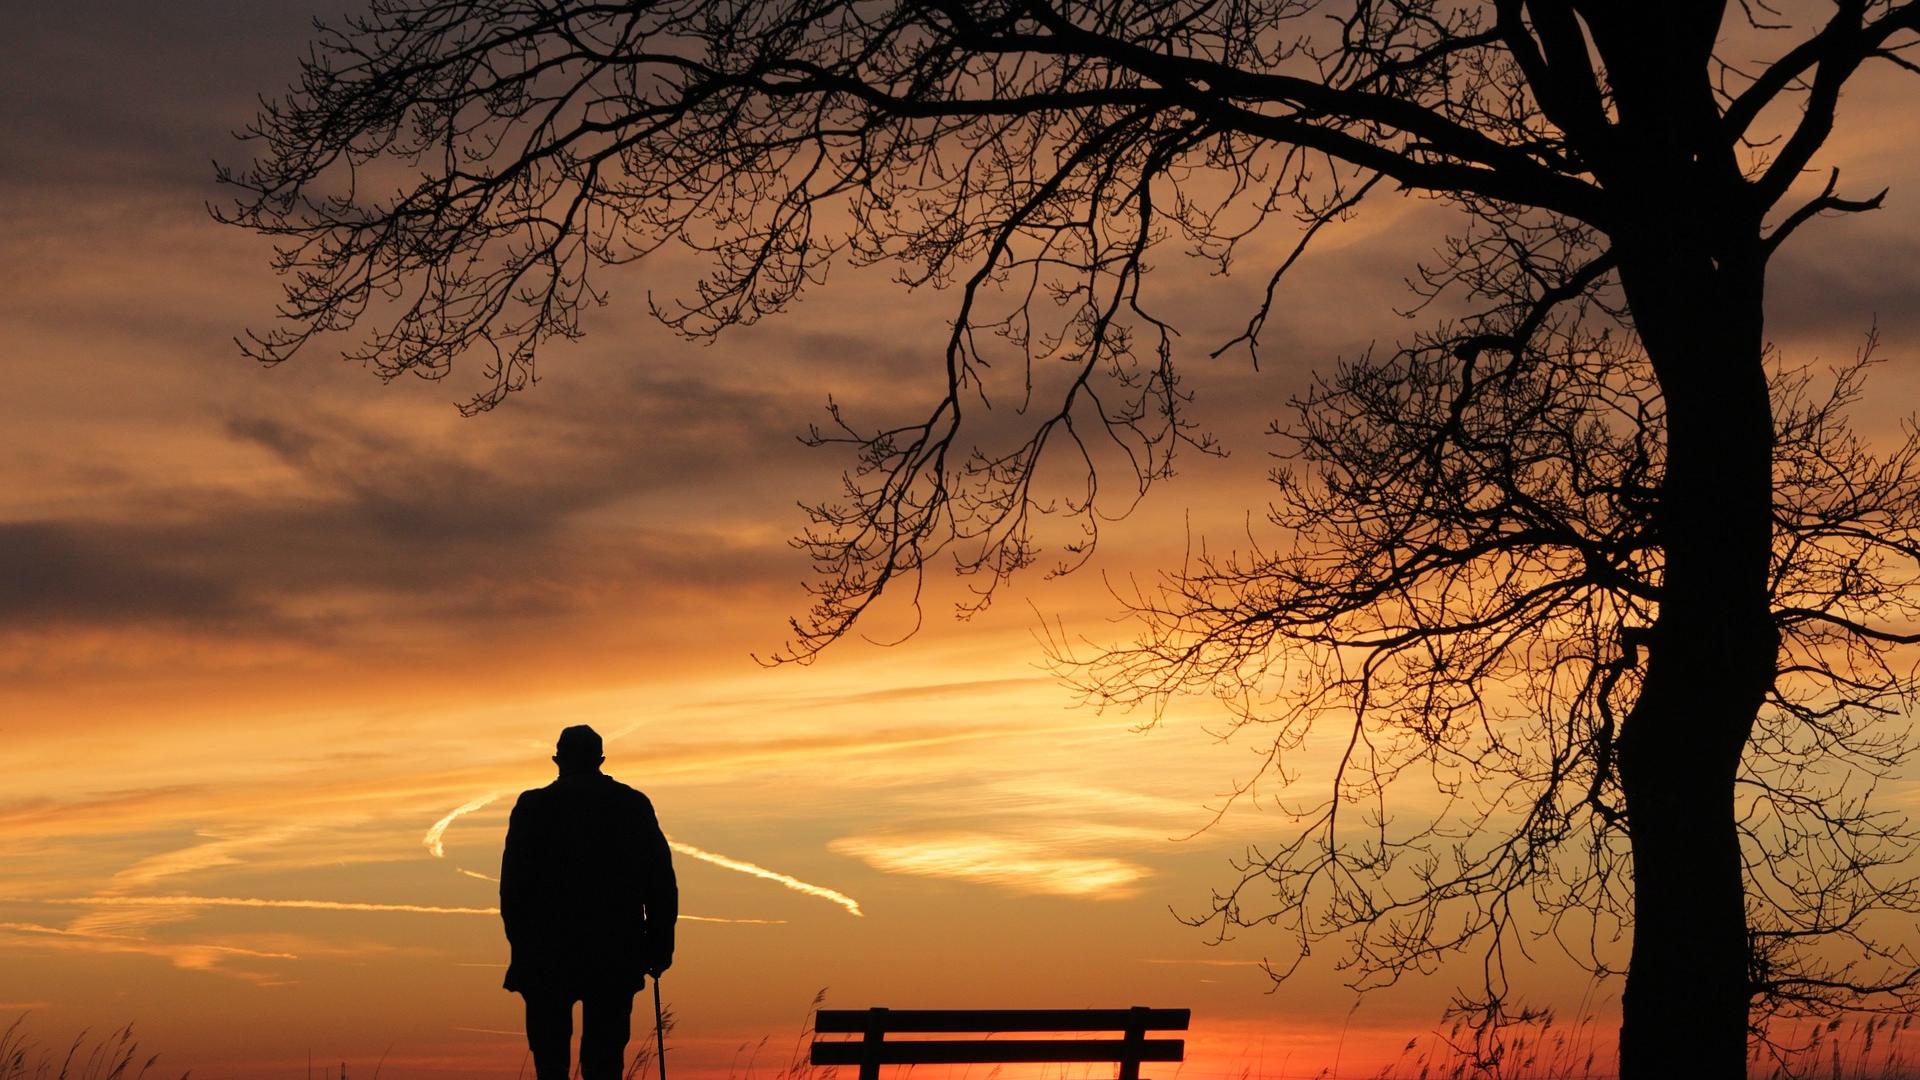 Stimmungsbild zum Beitrag: Es wird ein Mann neben einer Bank unter einem Baum im Sonnenuntergang abgebildet.